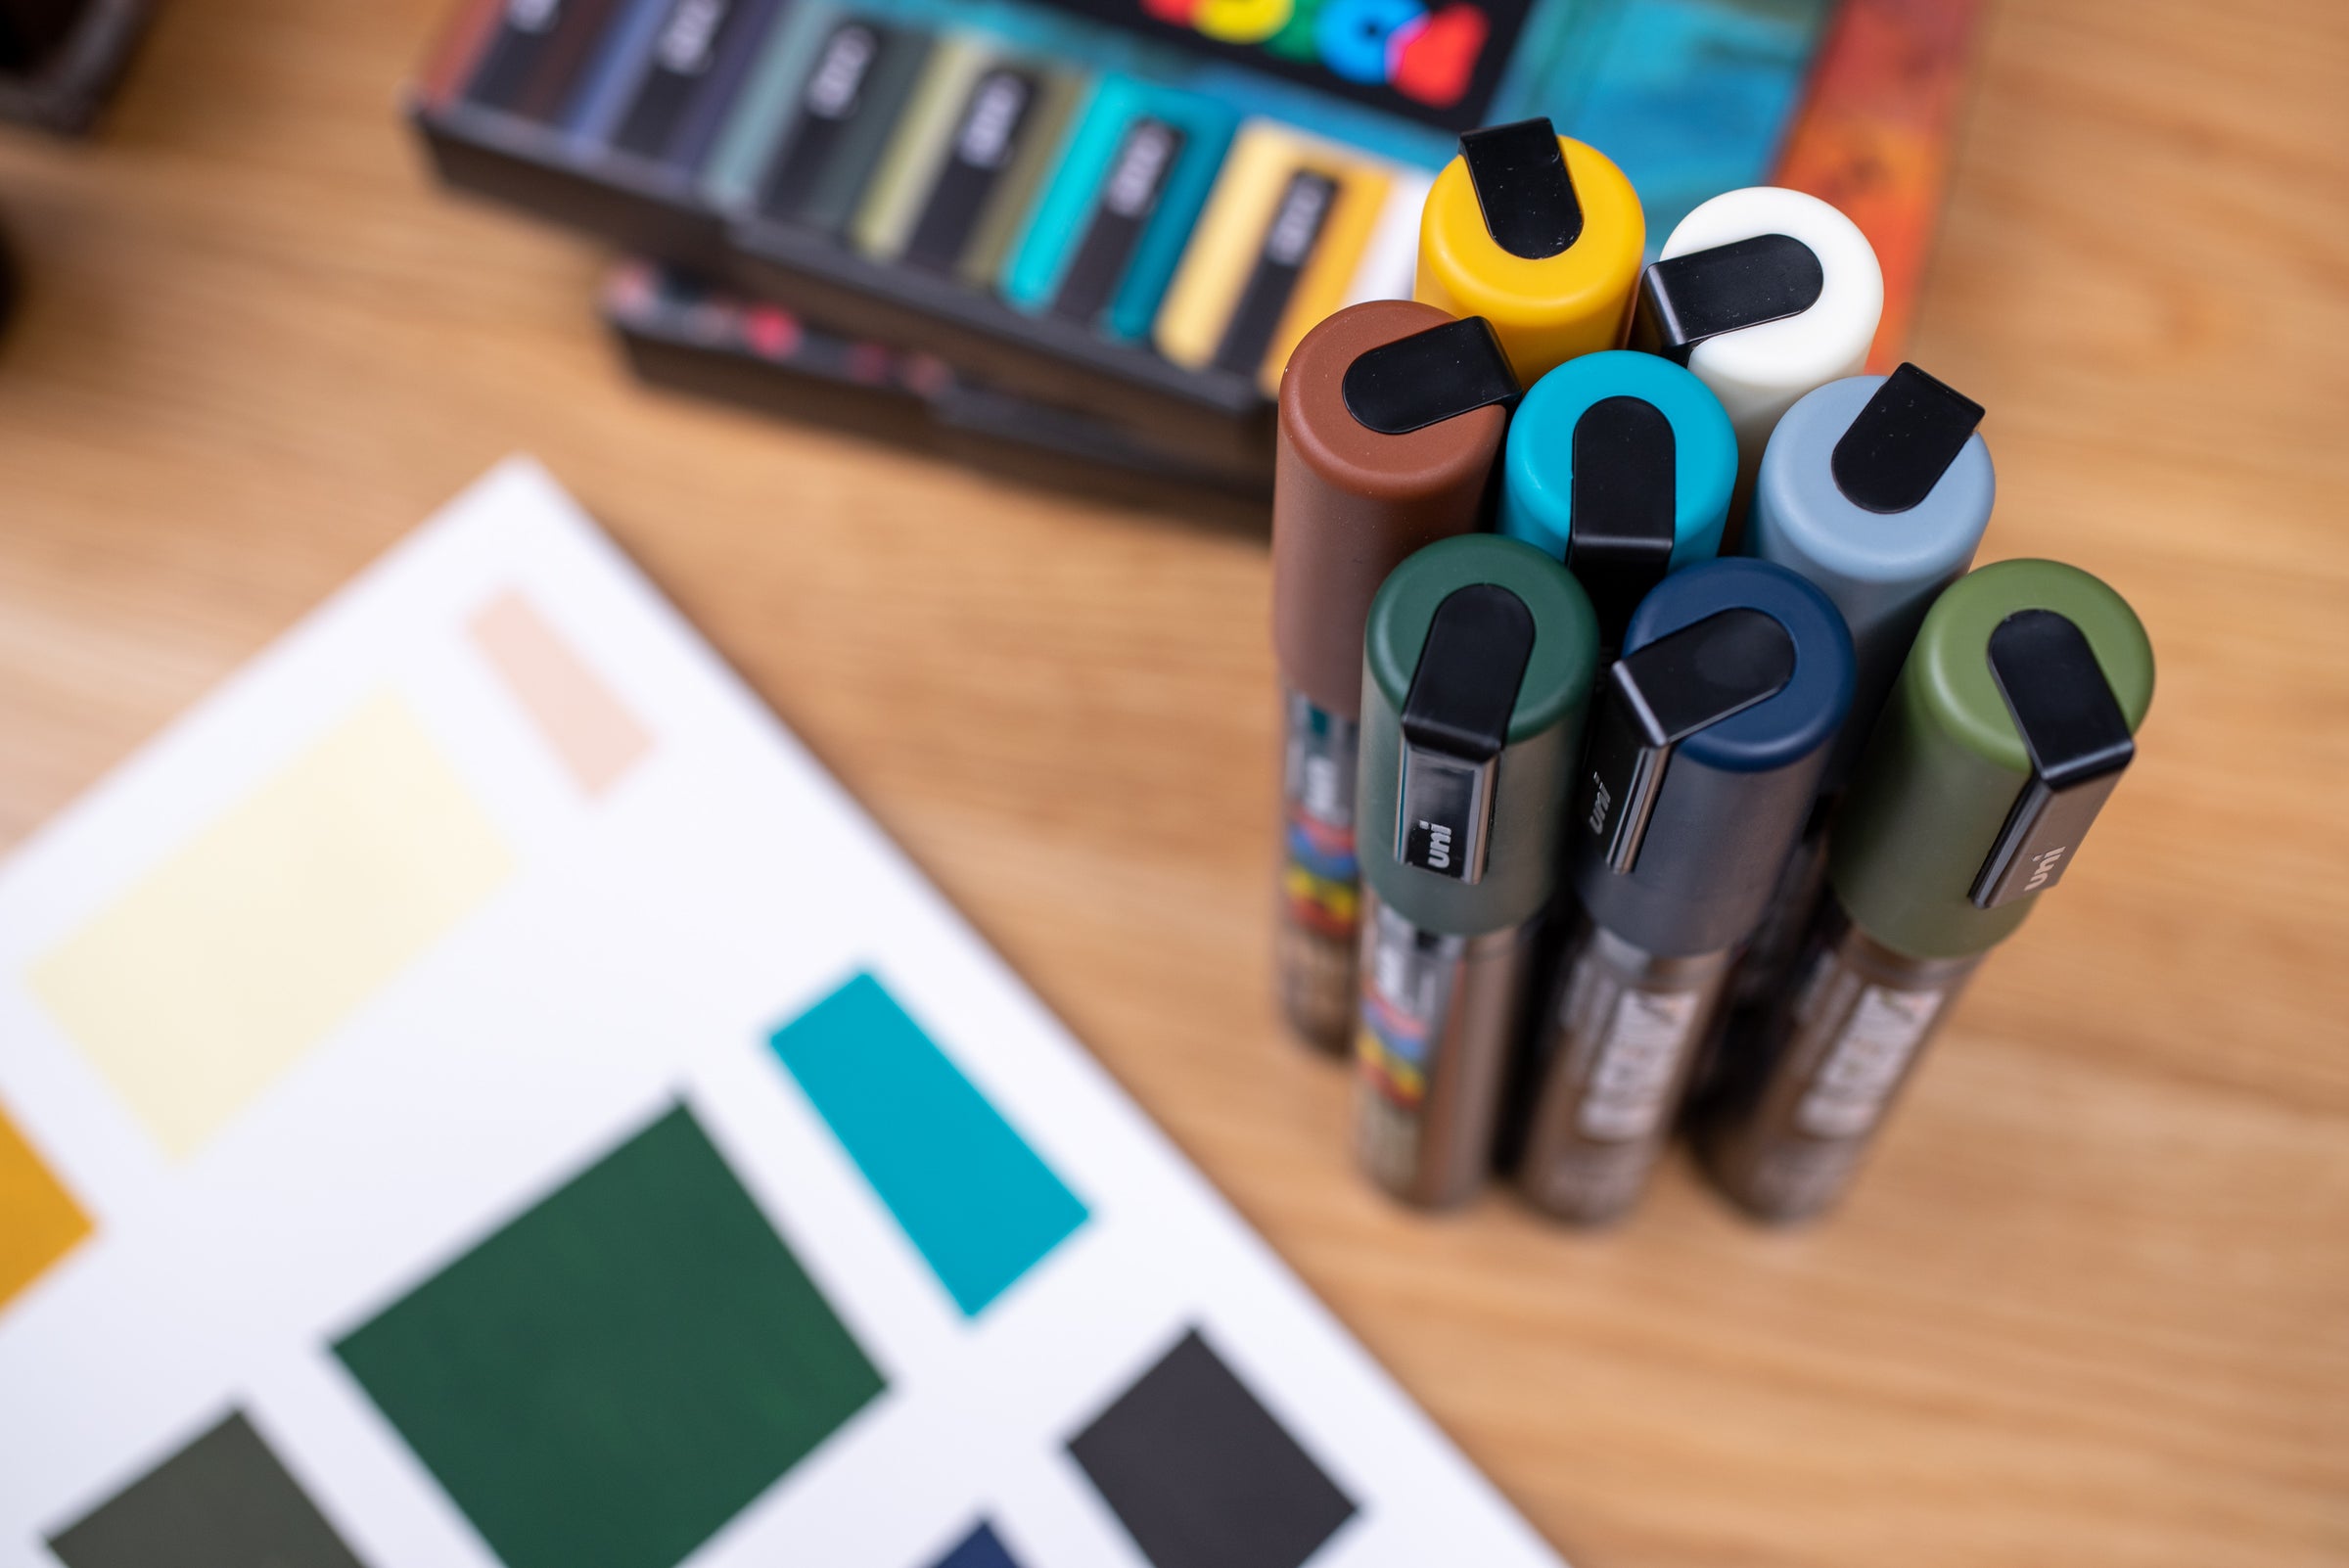 Uni POSCA Paint Markers, Earth Colors Set (PC-5M) – St. Louis Art